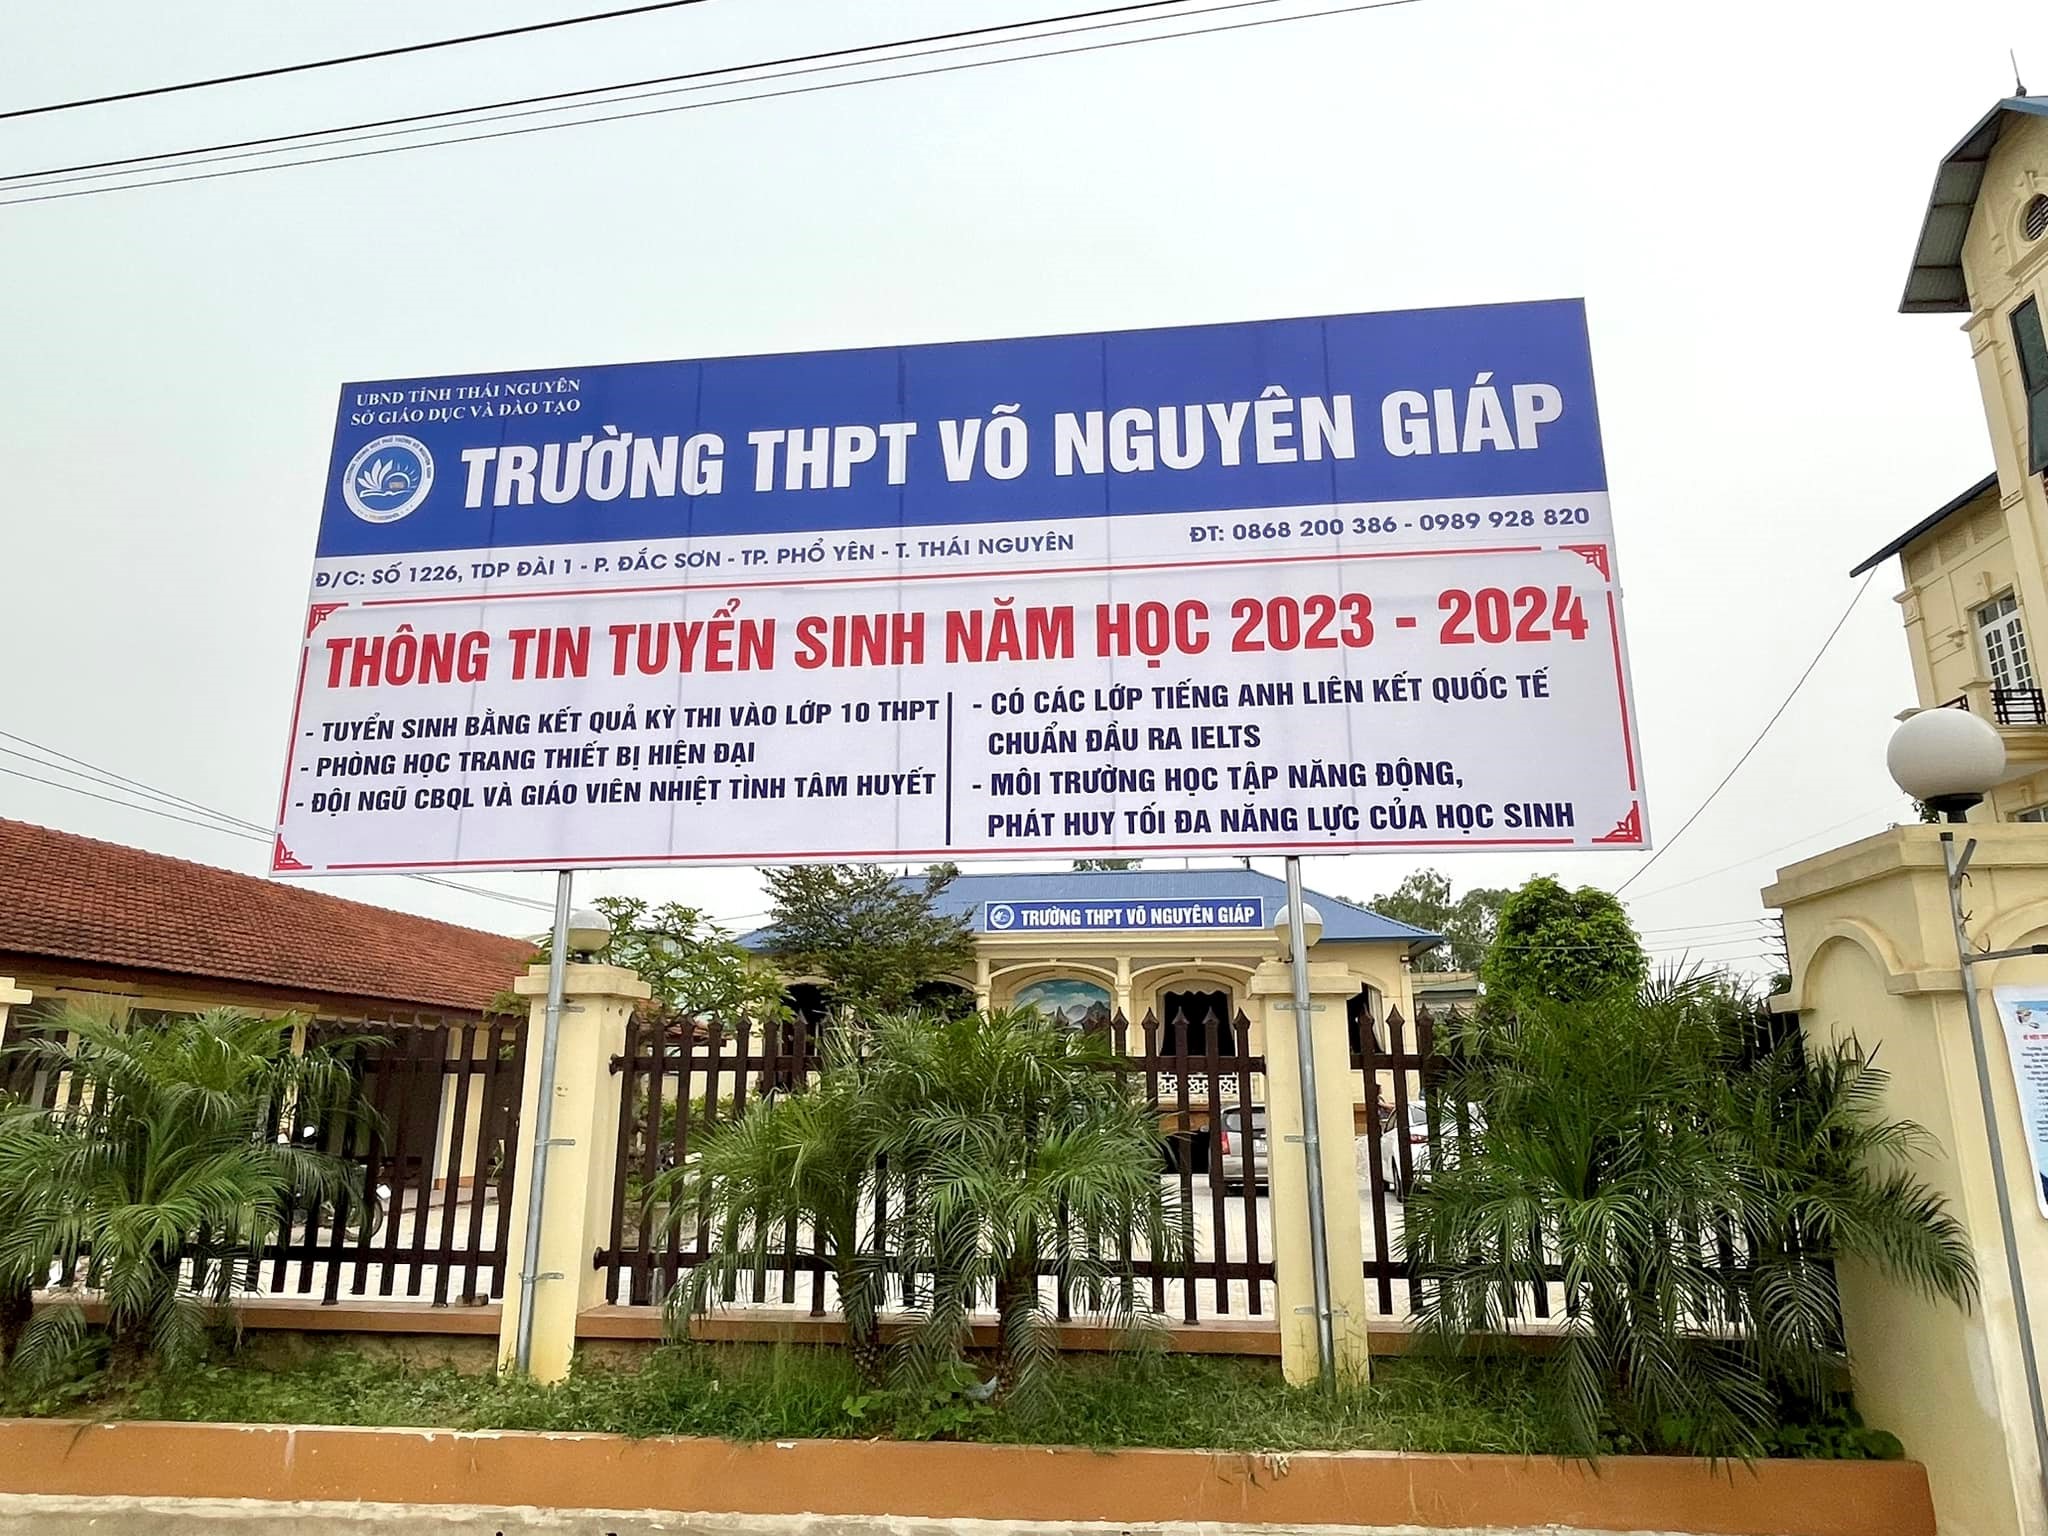 Trường THPT Võ Nguyên Giáp (Thái Nguyên) – ngôi trường chắp cánh cho tài năng tỏa sáng - 1